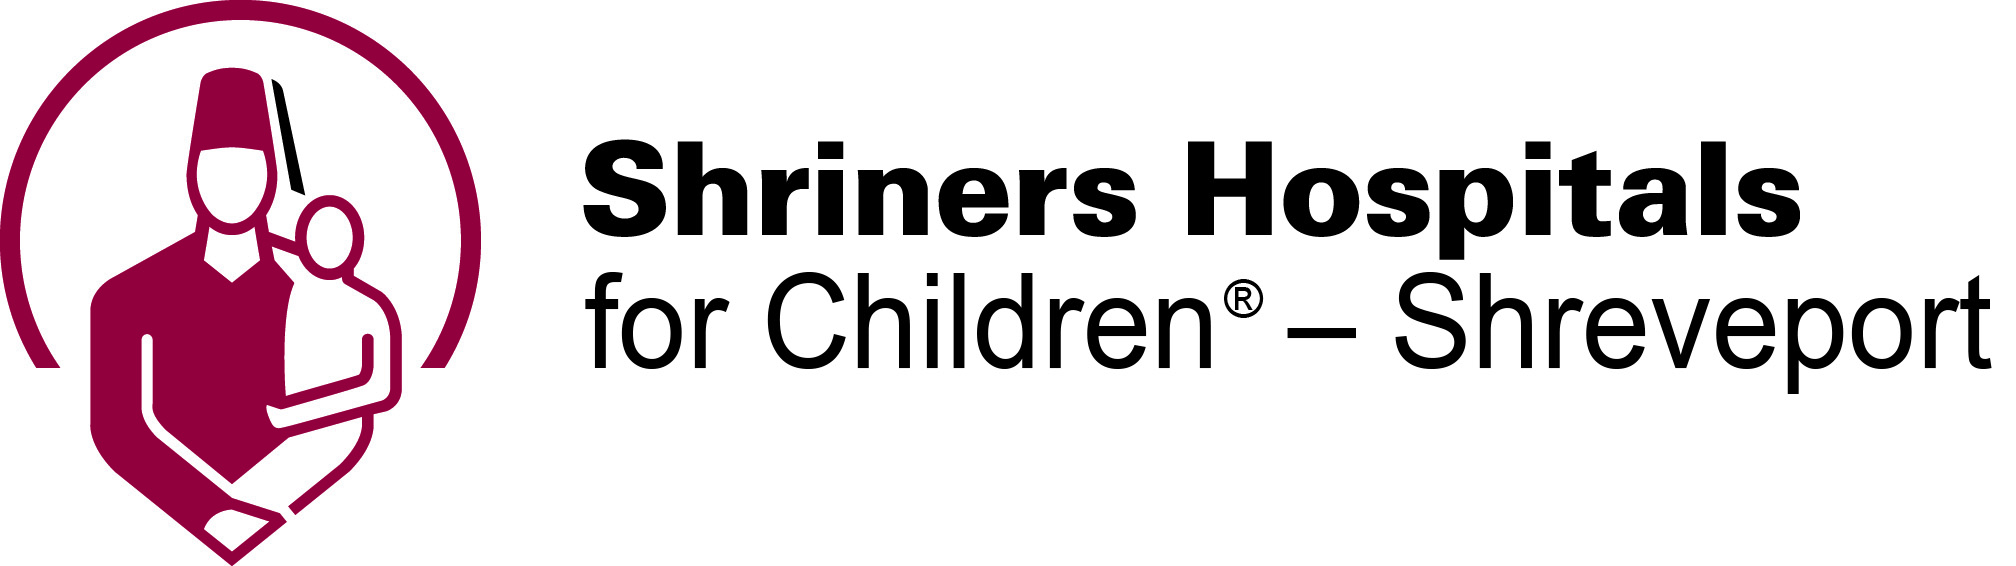 Shriners Hospitals for Children Shreveport